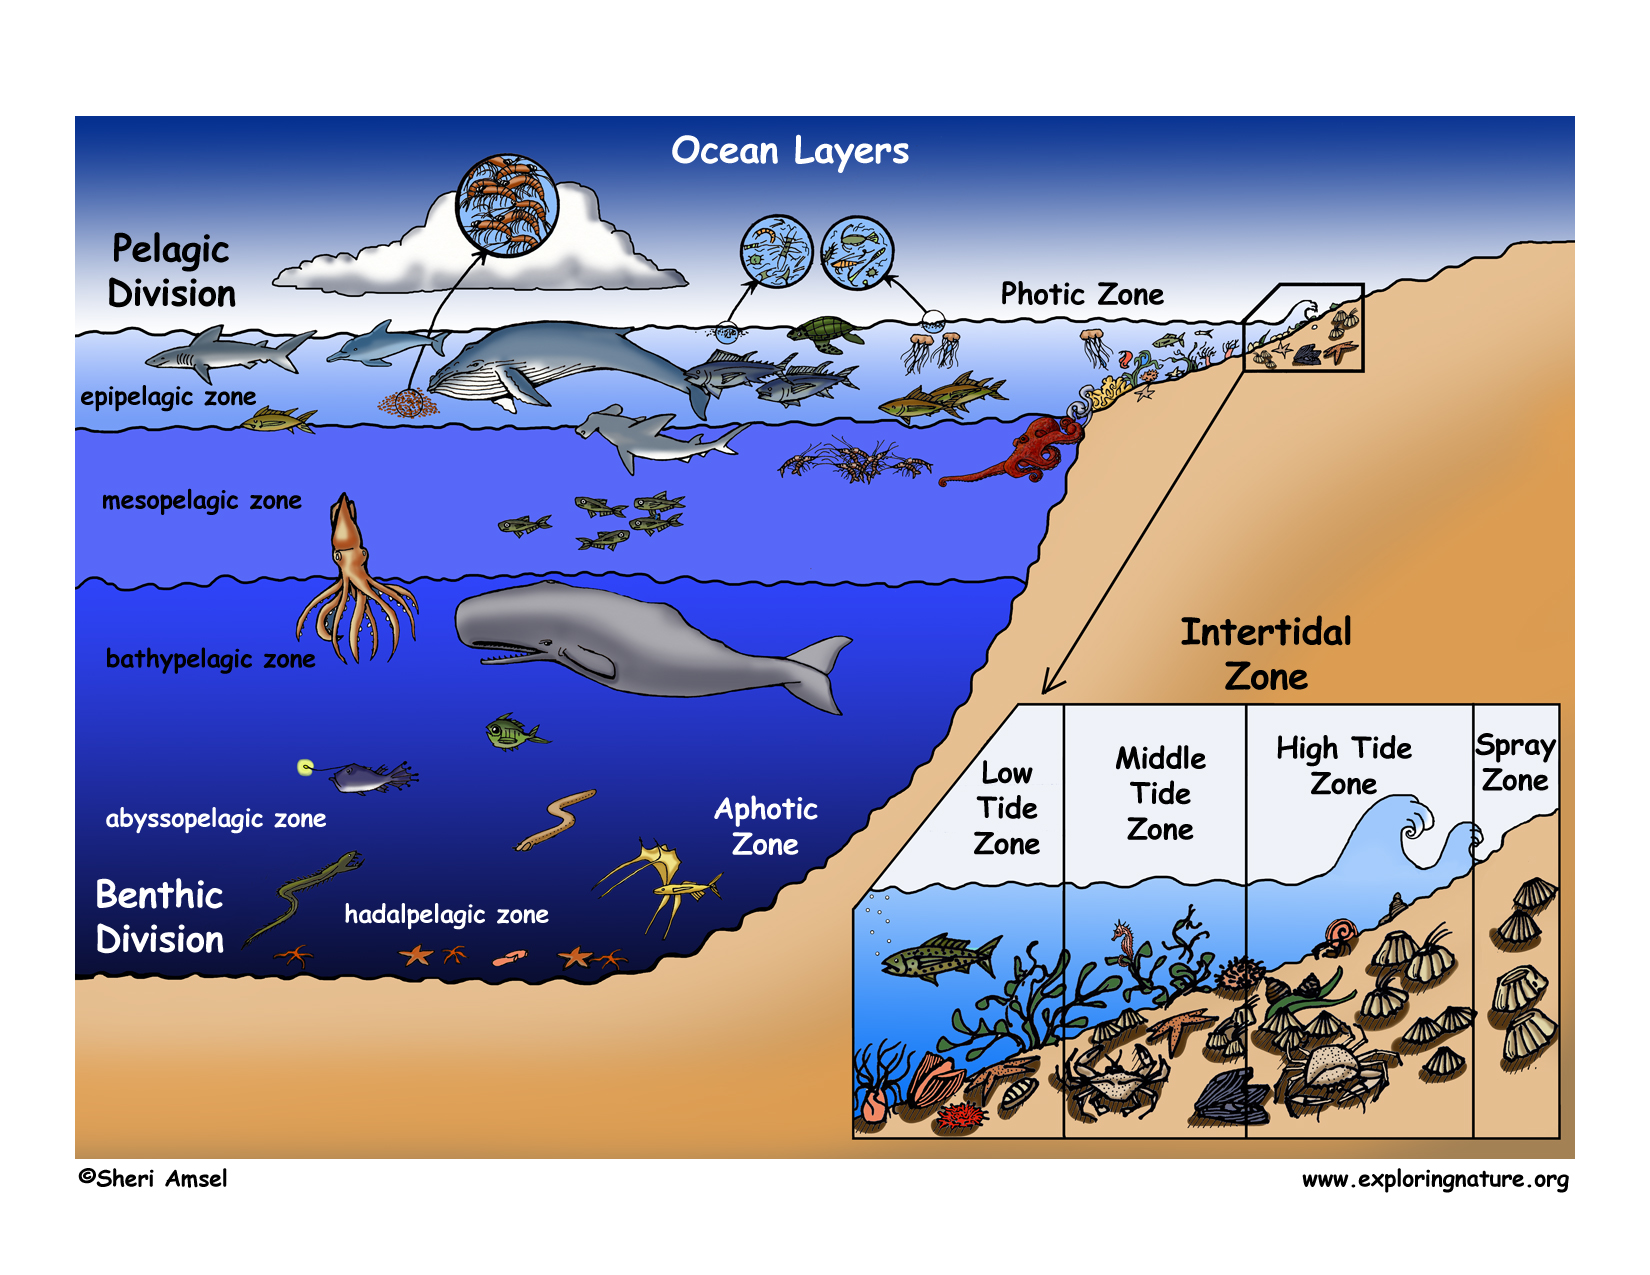 5 слоев океана. Распространение жизни в океане. Зоны жизни в океане. Обитатели глубинных слоев океана. Распределение глубин в океане.